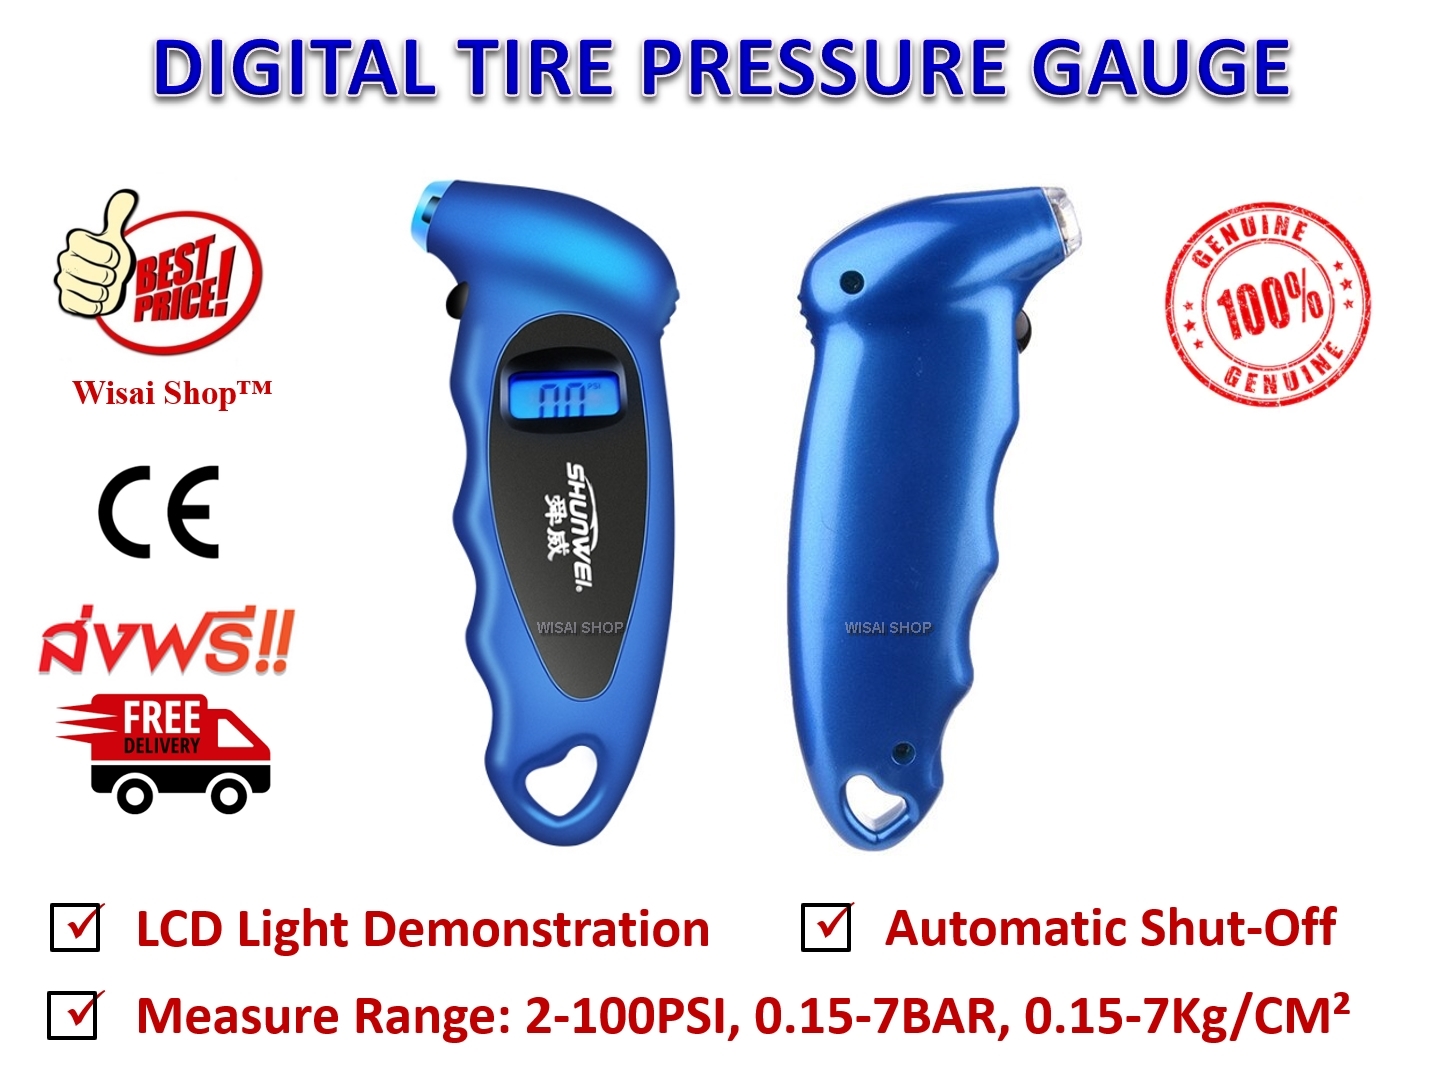 เกจวัดลมยาง เครื่องวัดลมยางแบบดิจิตอล Digital Tire Pressure Gauge รุ่น SD-2802